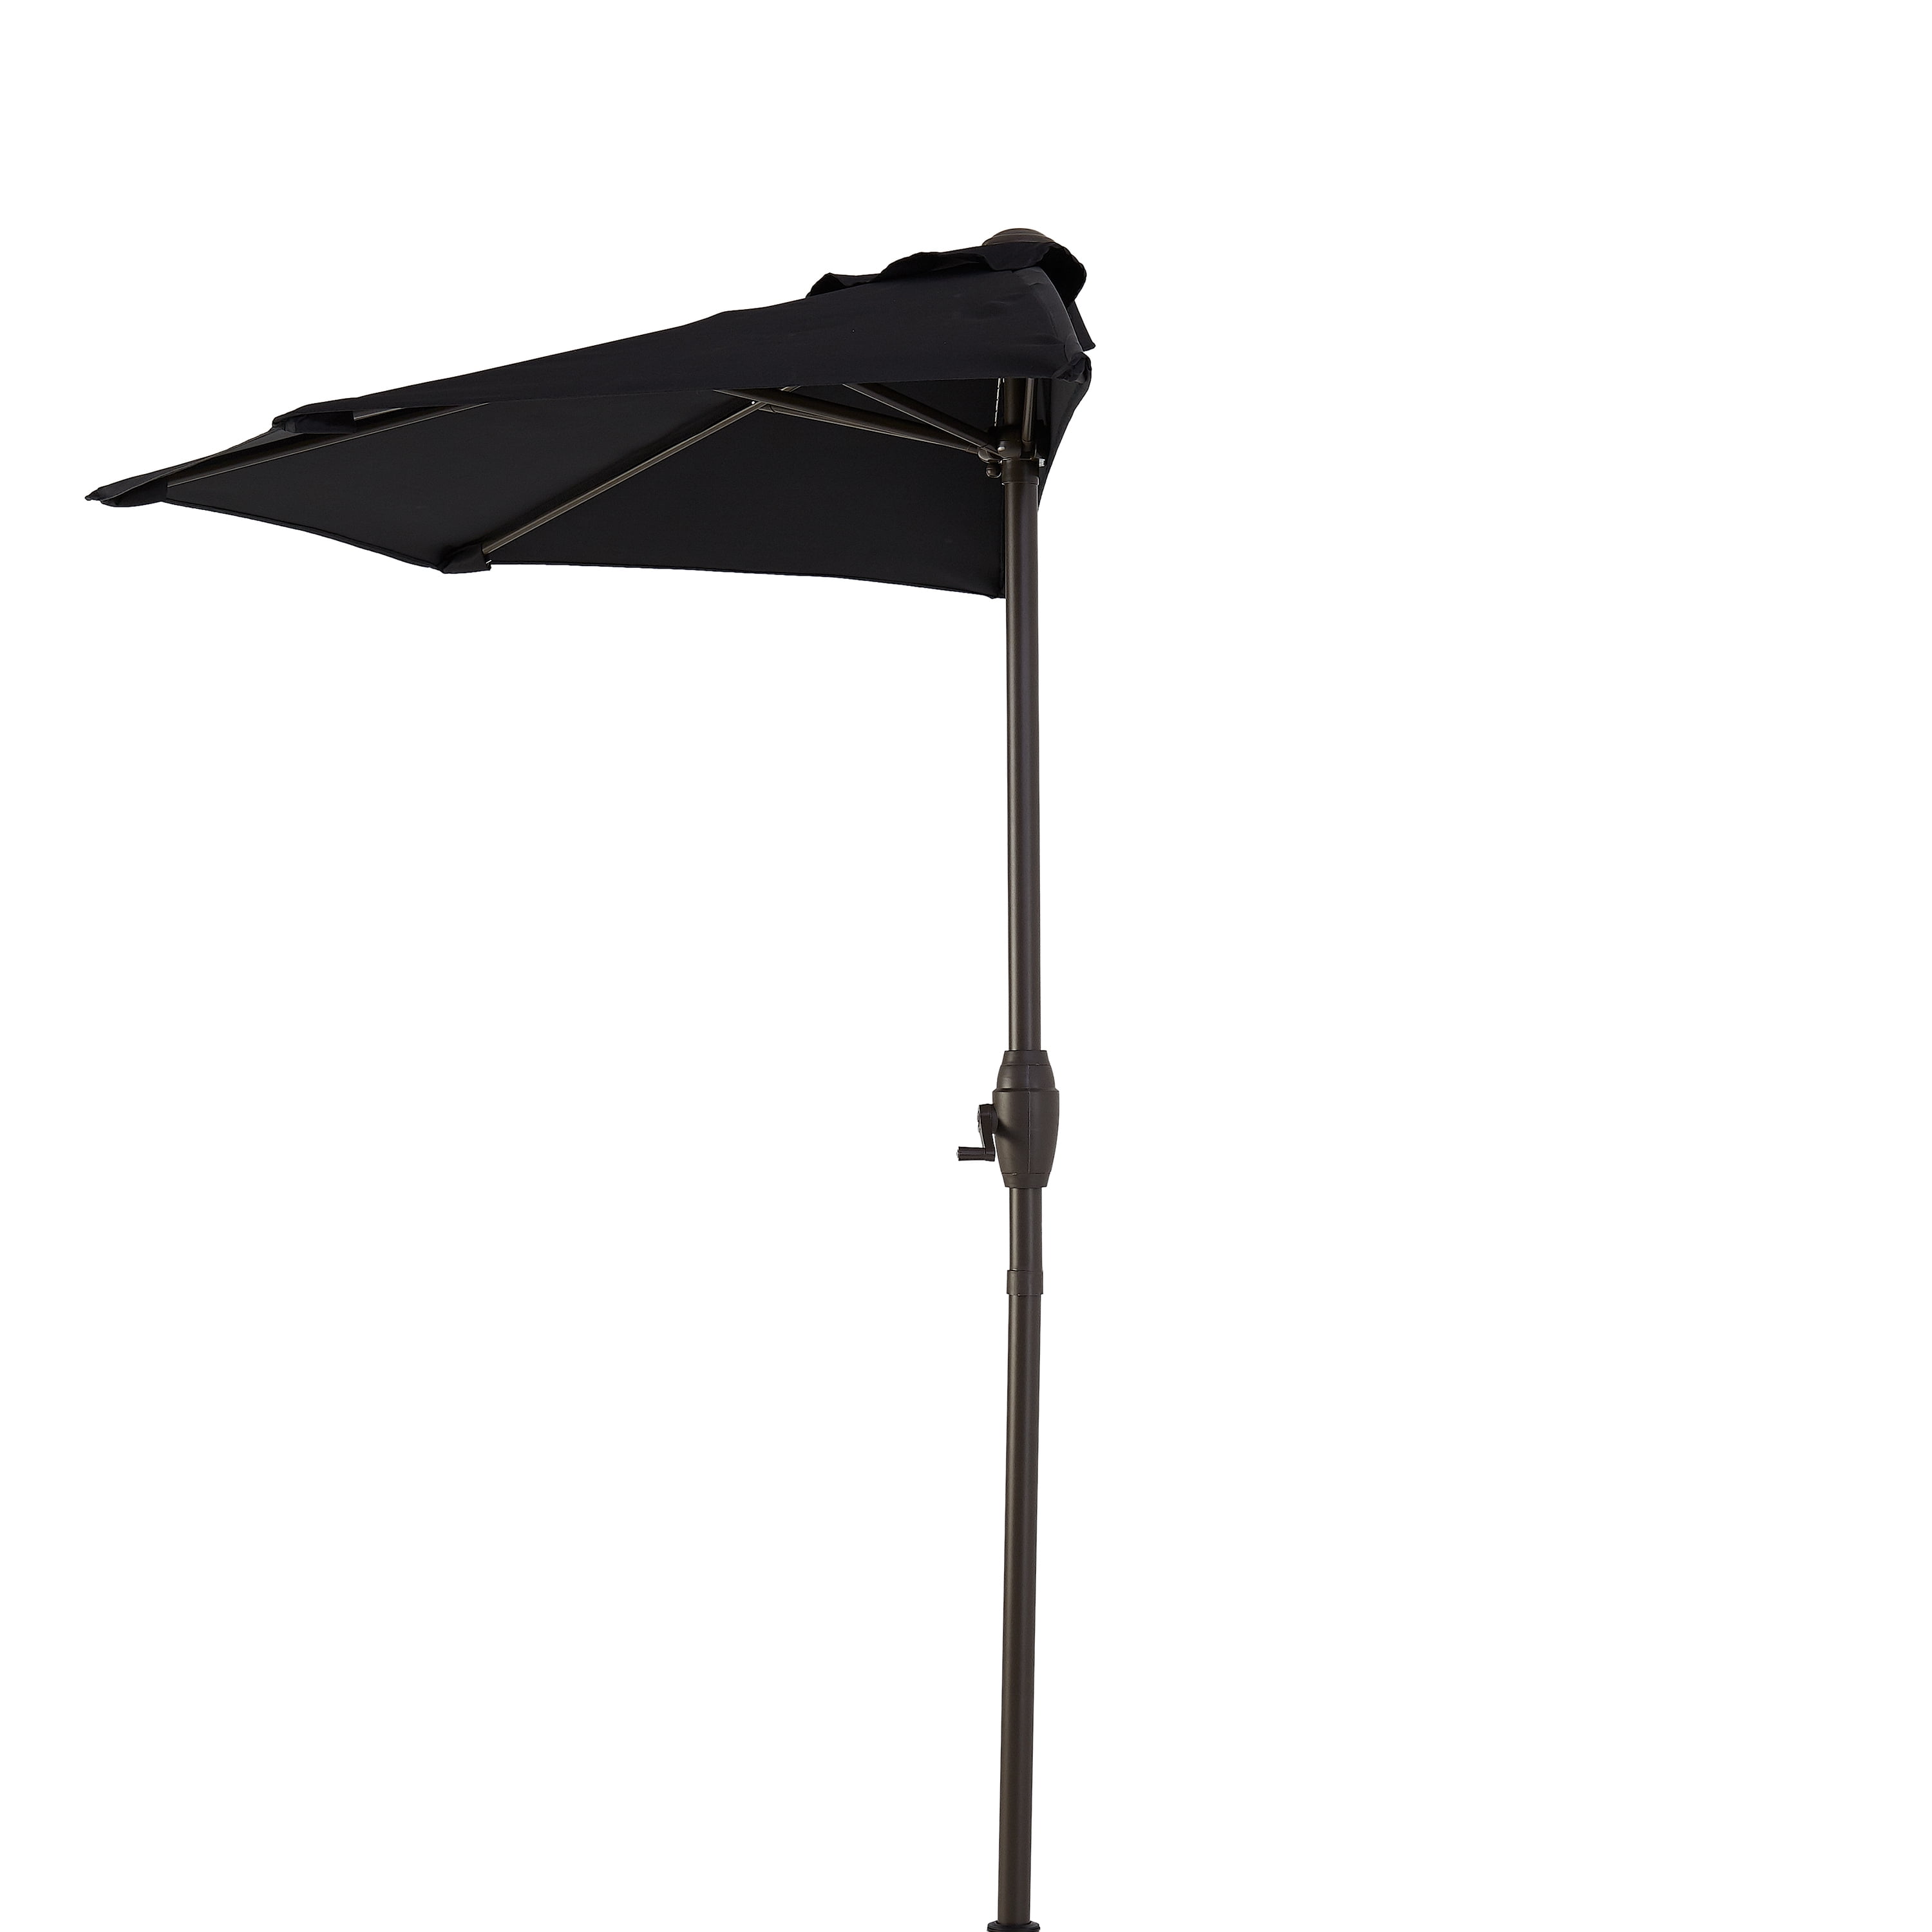 Details about   Mainstays Hillwood 7" Half-Round Patio Umbrella 